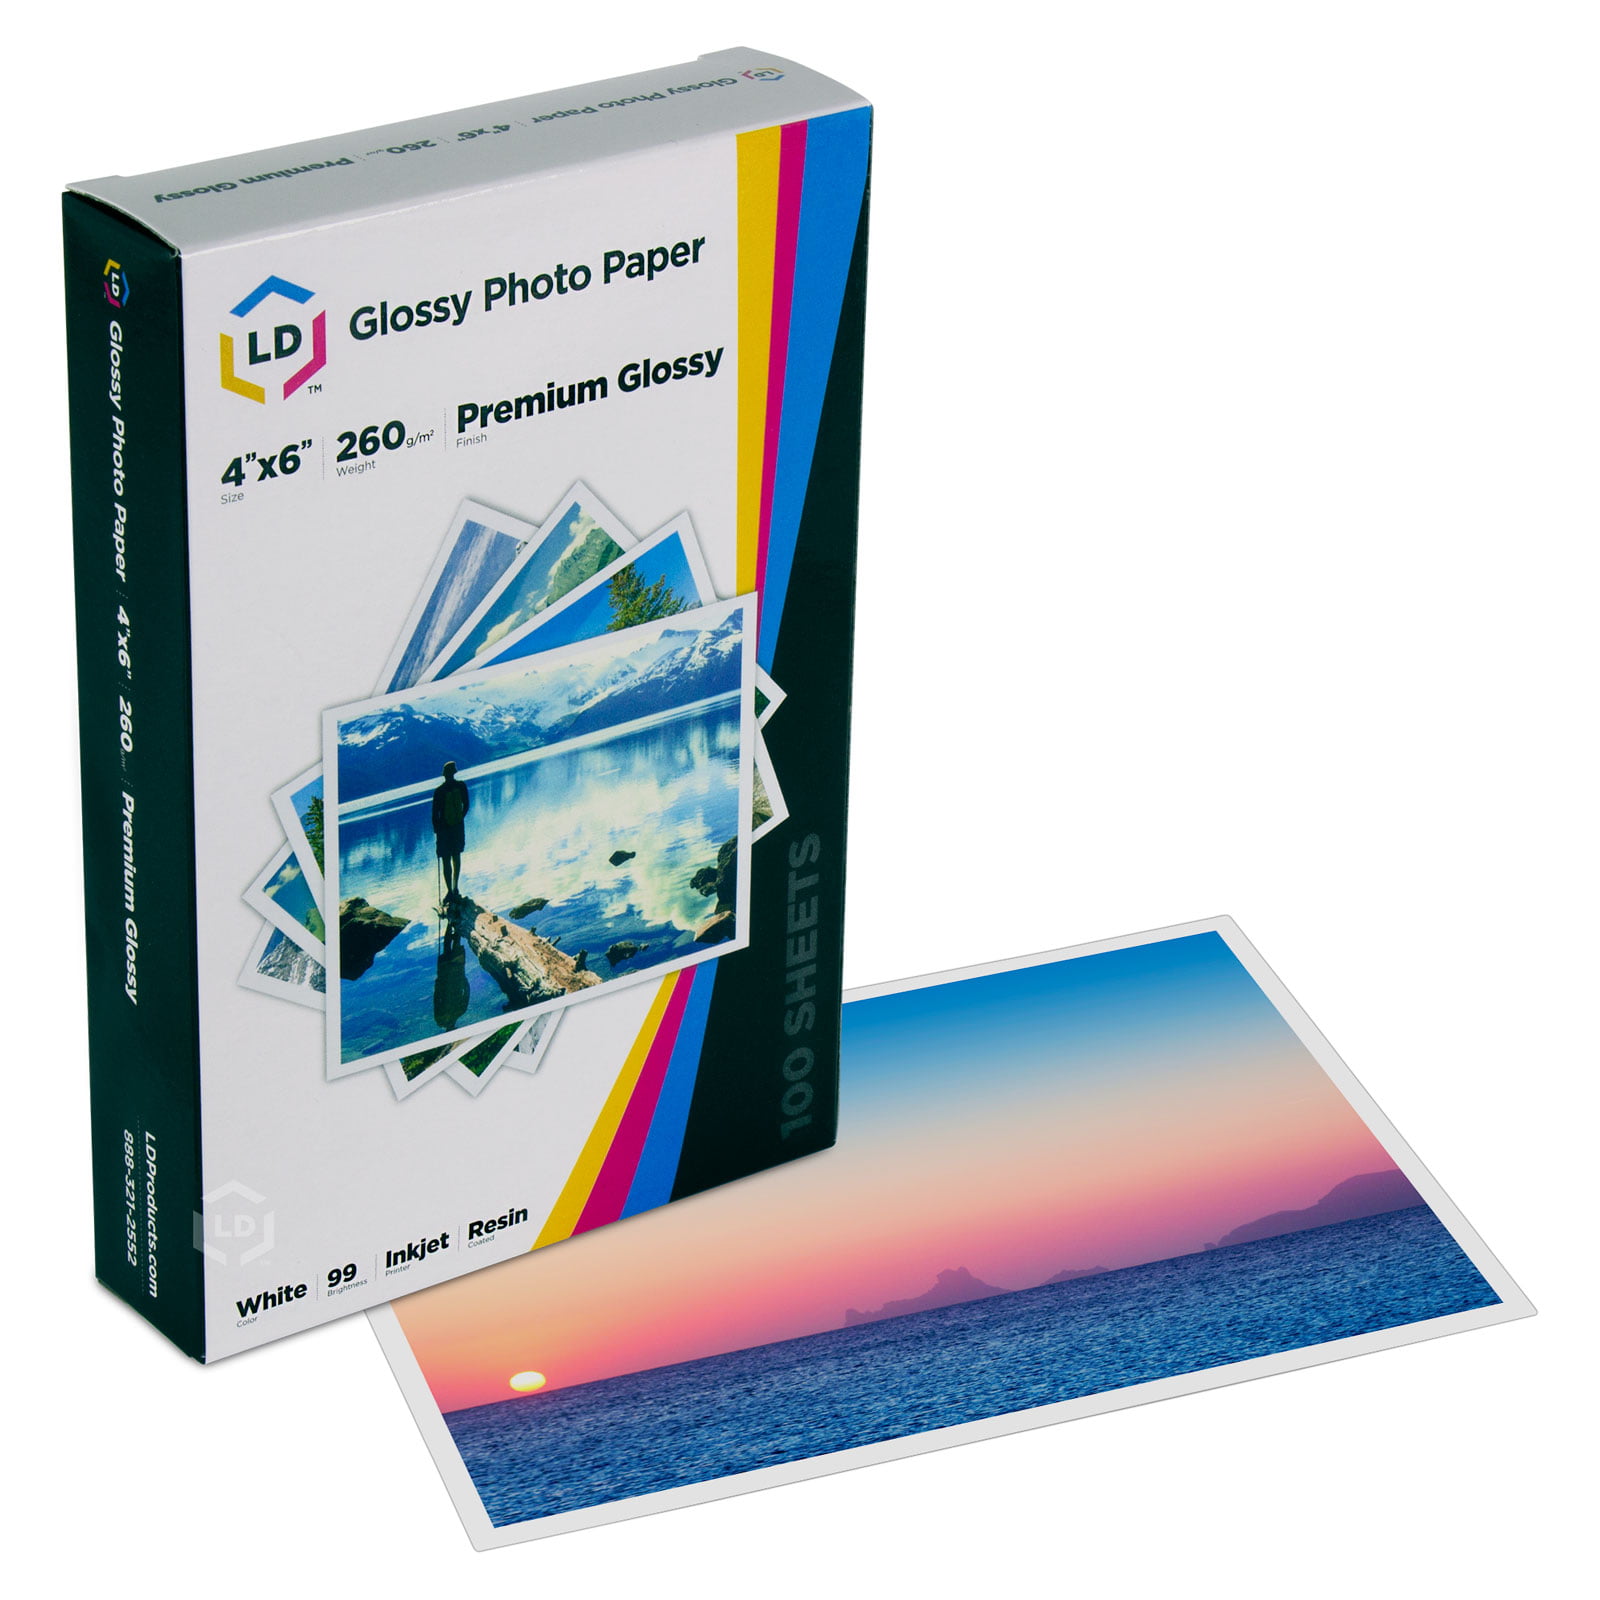 Paper Cardboard a4 125 sheets Glossy Matte 200gr Inkjet Laser Printer 